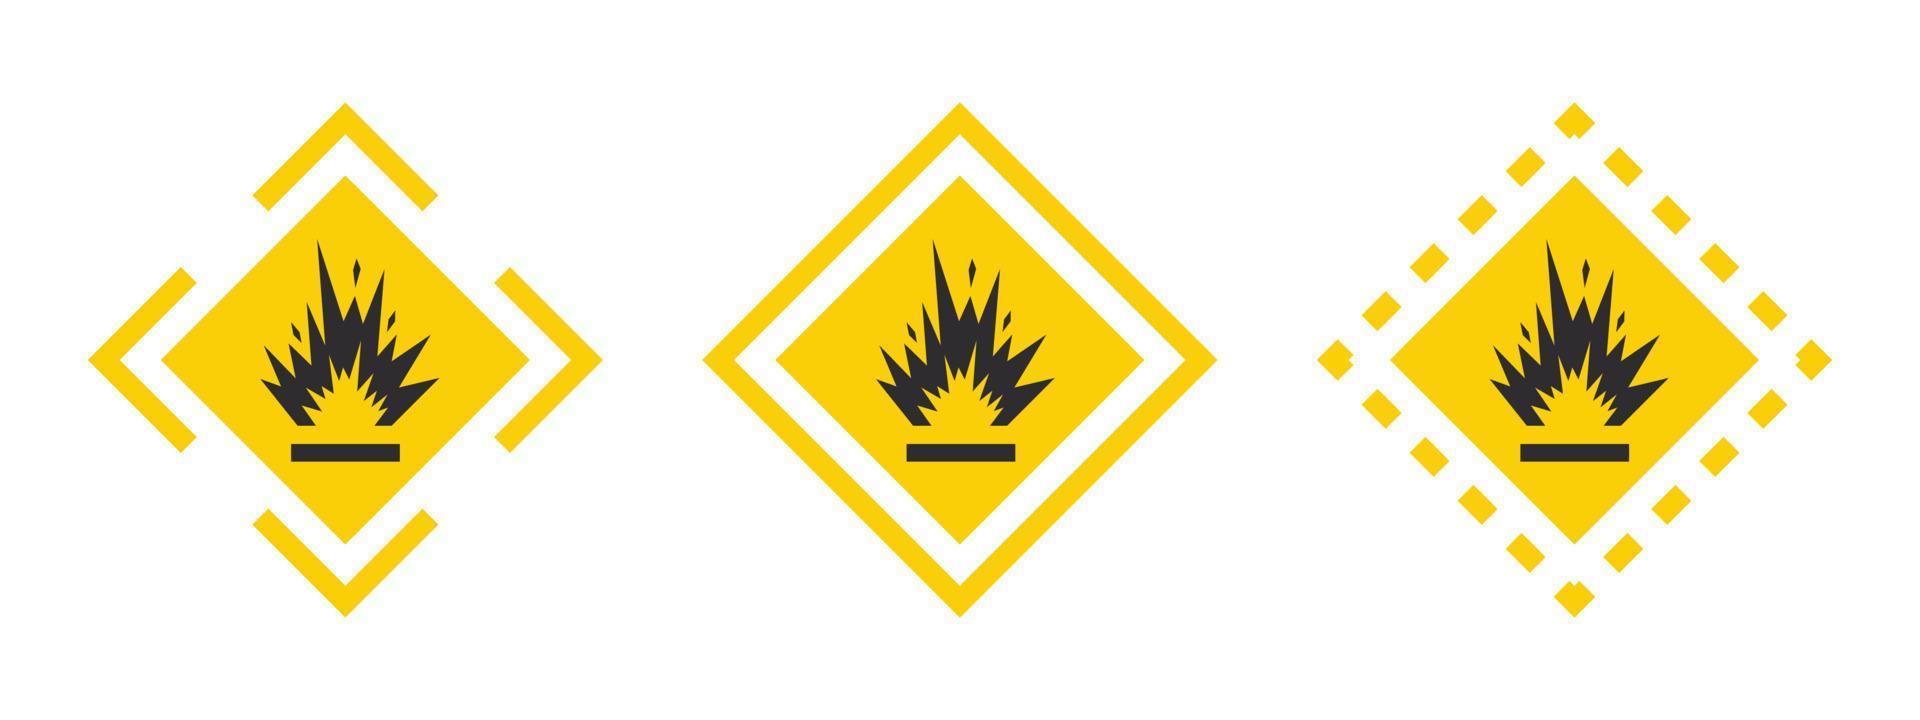 extreem explosief materialen. voorzichtigheid waarschuwing teken explosieven vloeistoffen of materialen. explosieven stoffen pictogrammen set. vector pictogrammen